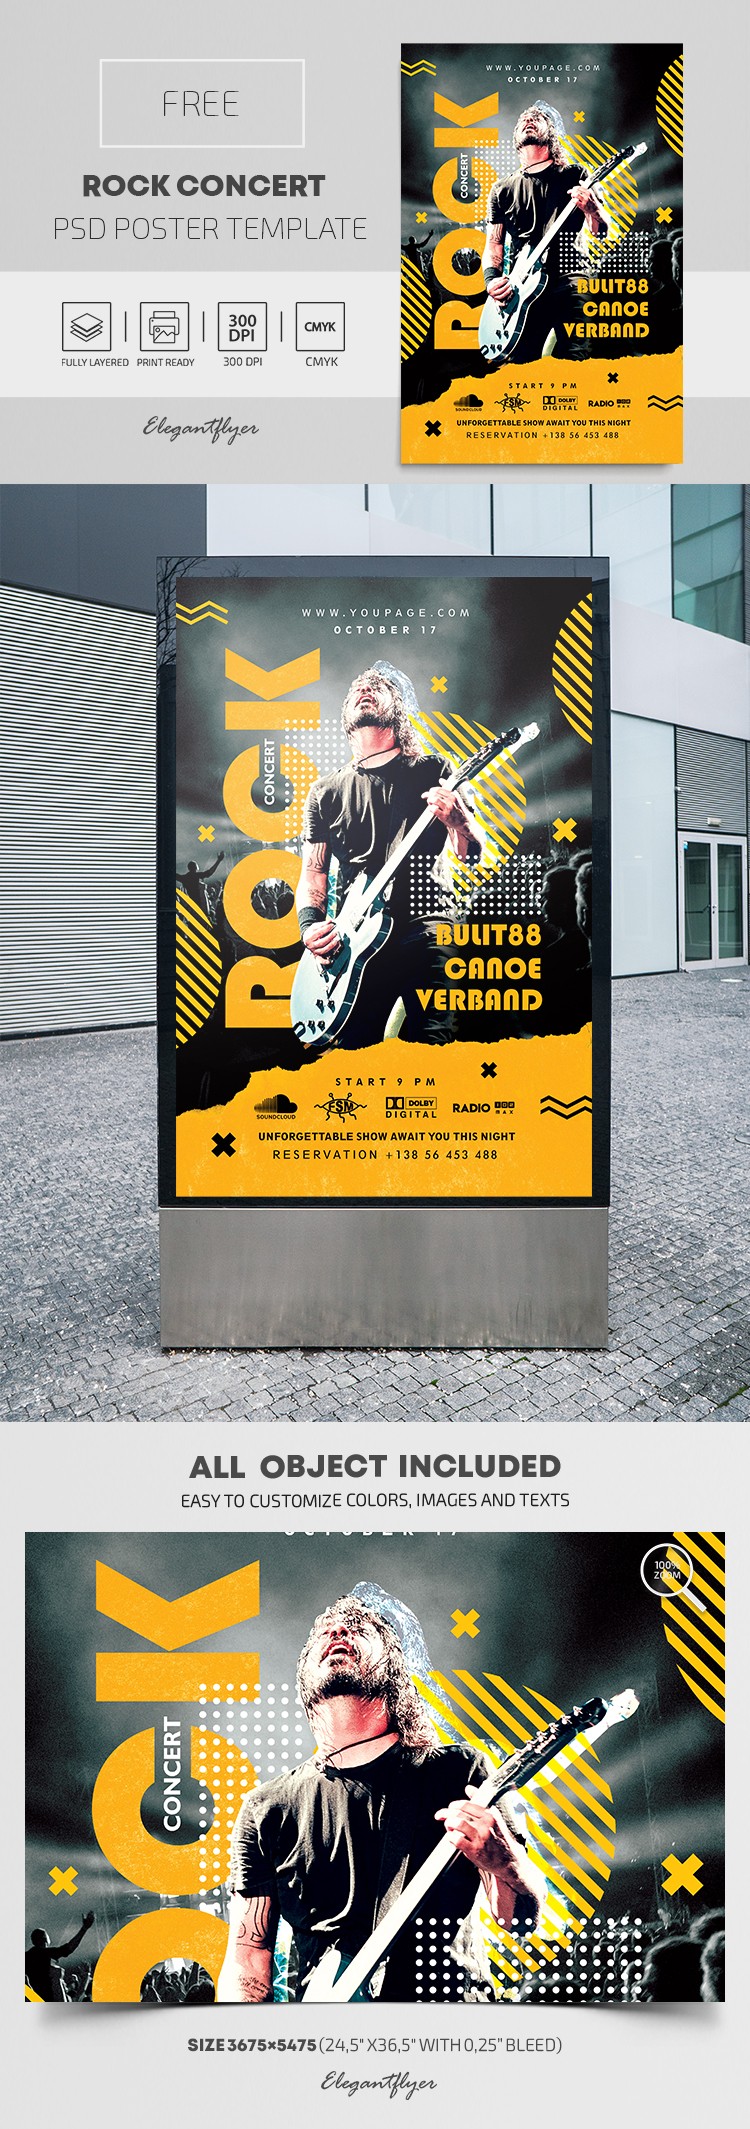 Rock Concert Poster by ElegantFlyer